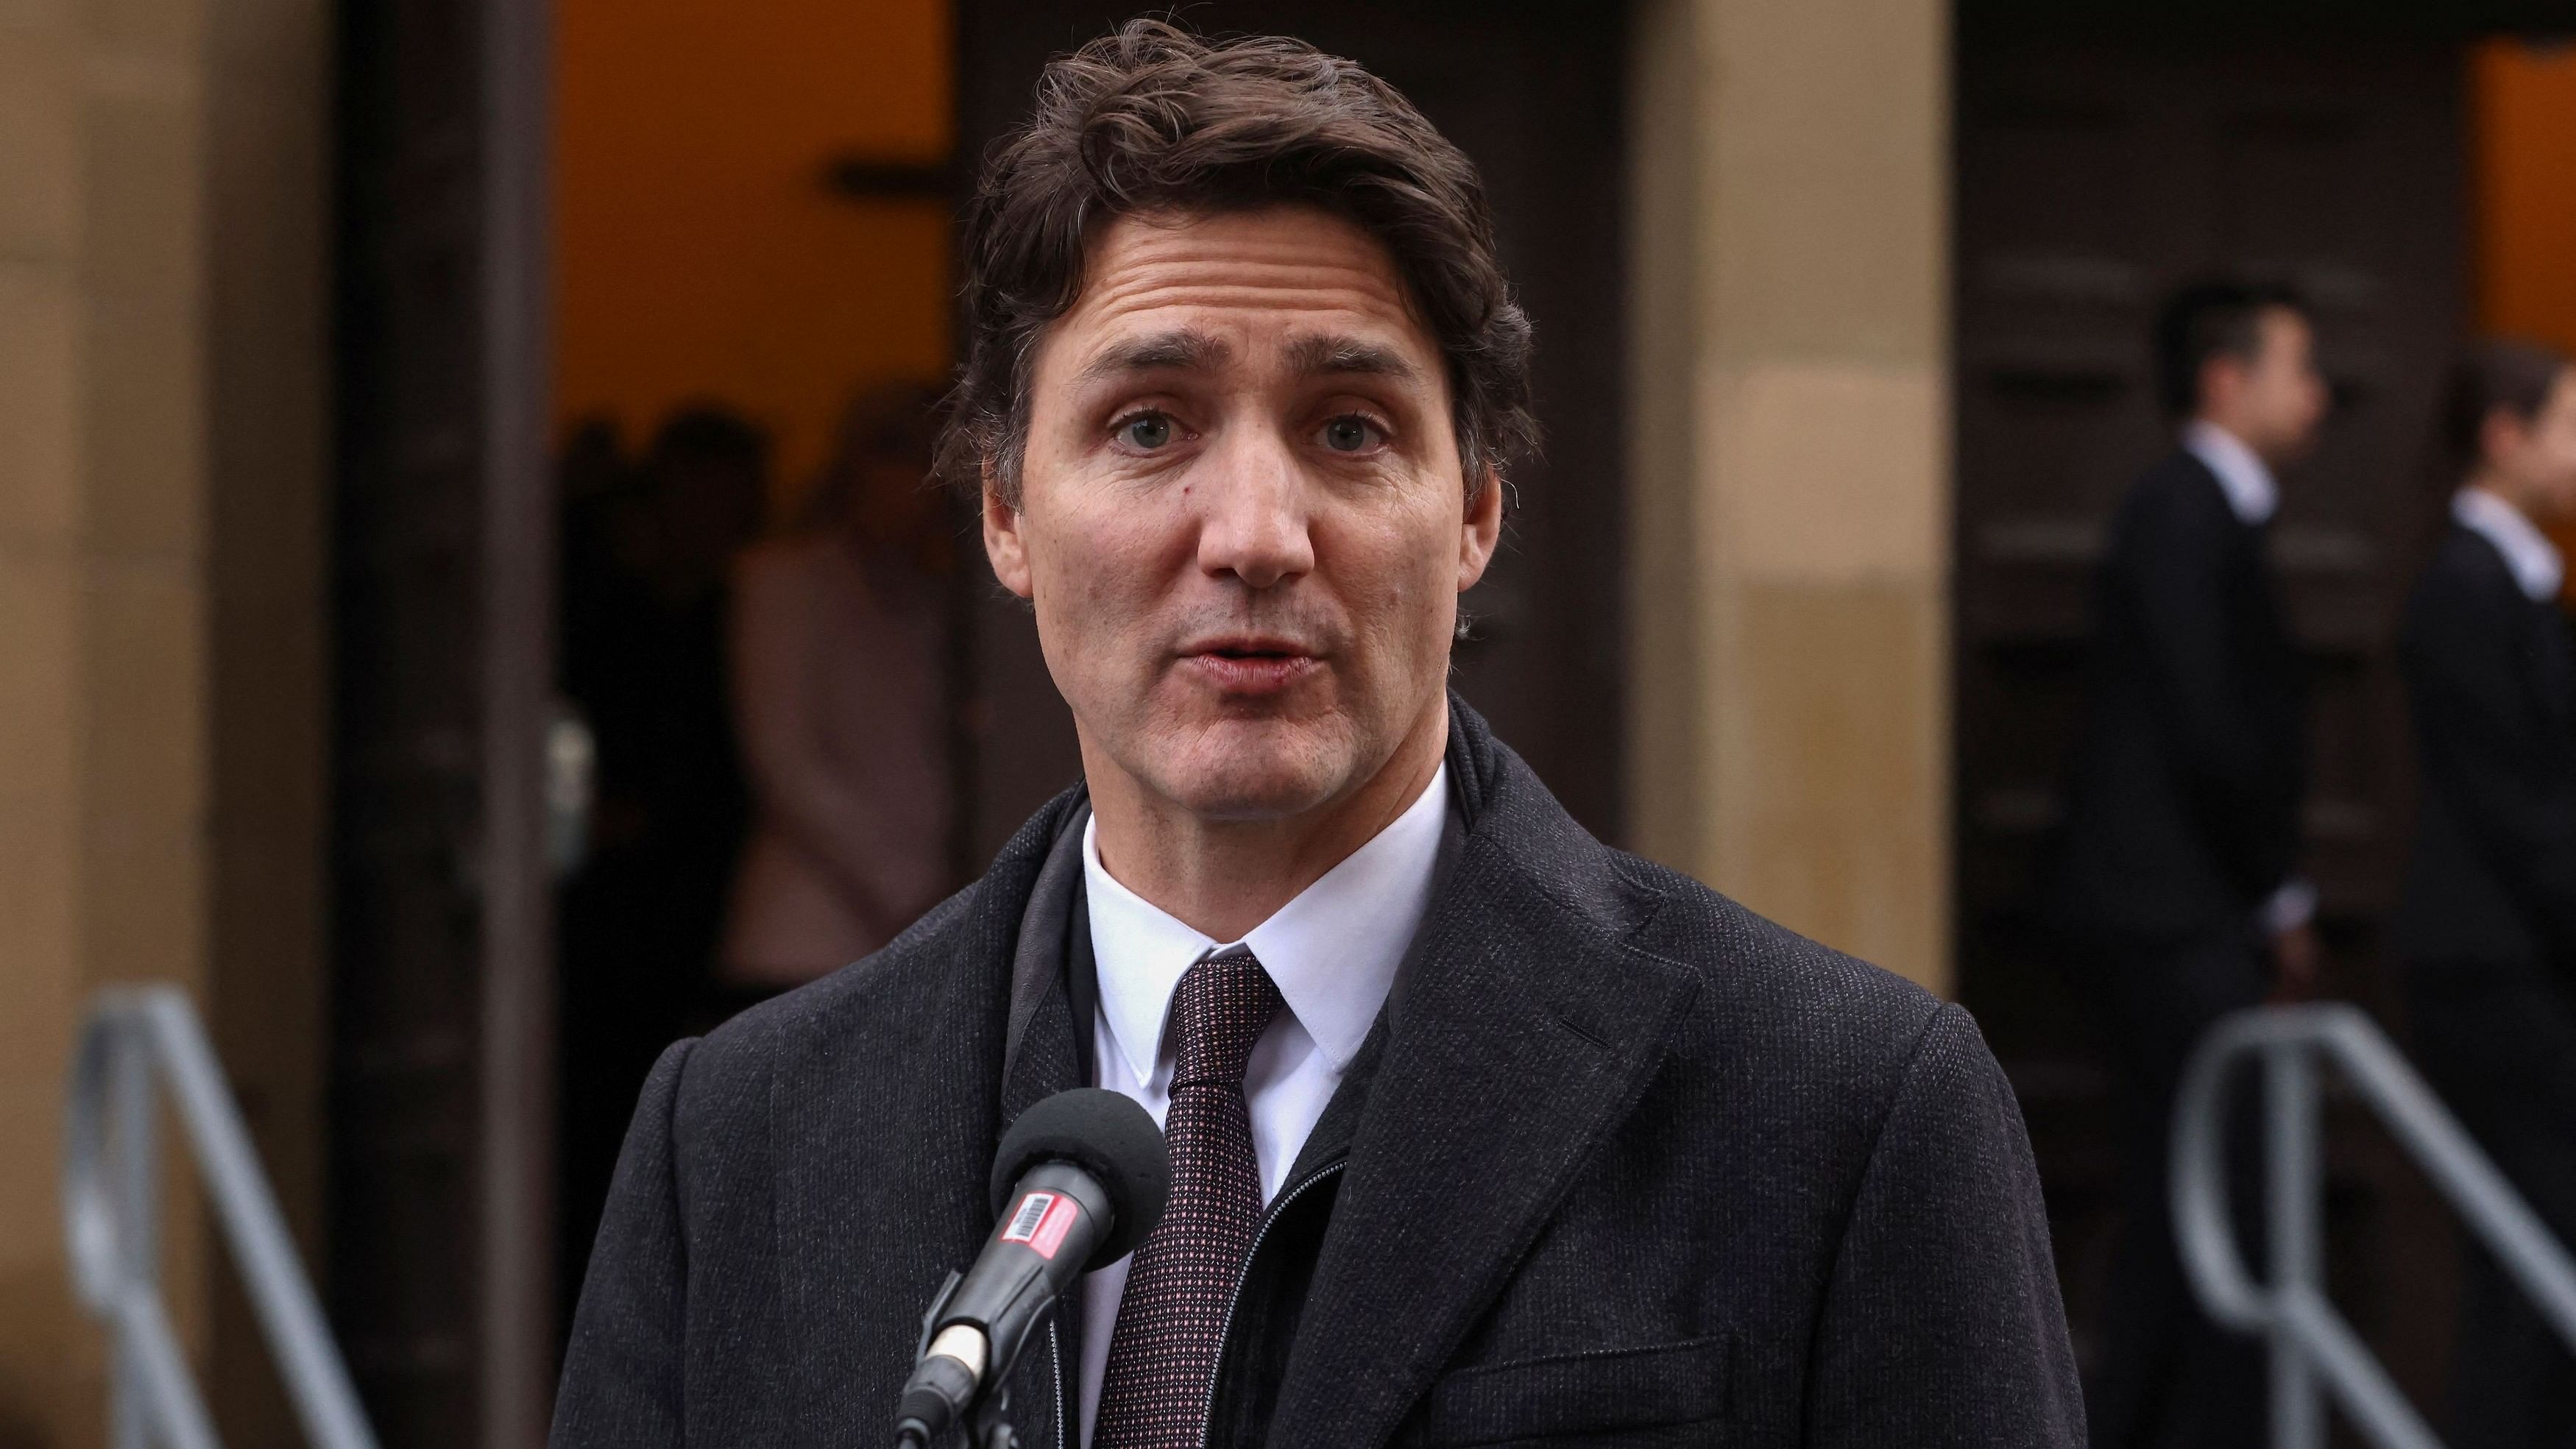 <div class="paragraphs"><p>Canadian Prime Minister Justin Trudeau.</p></div>